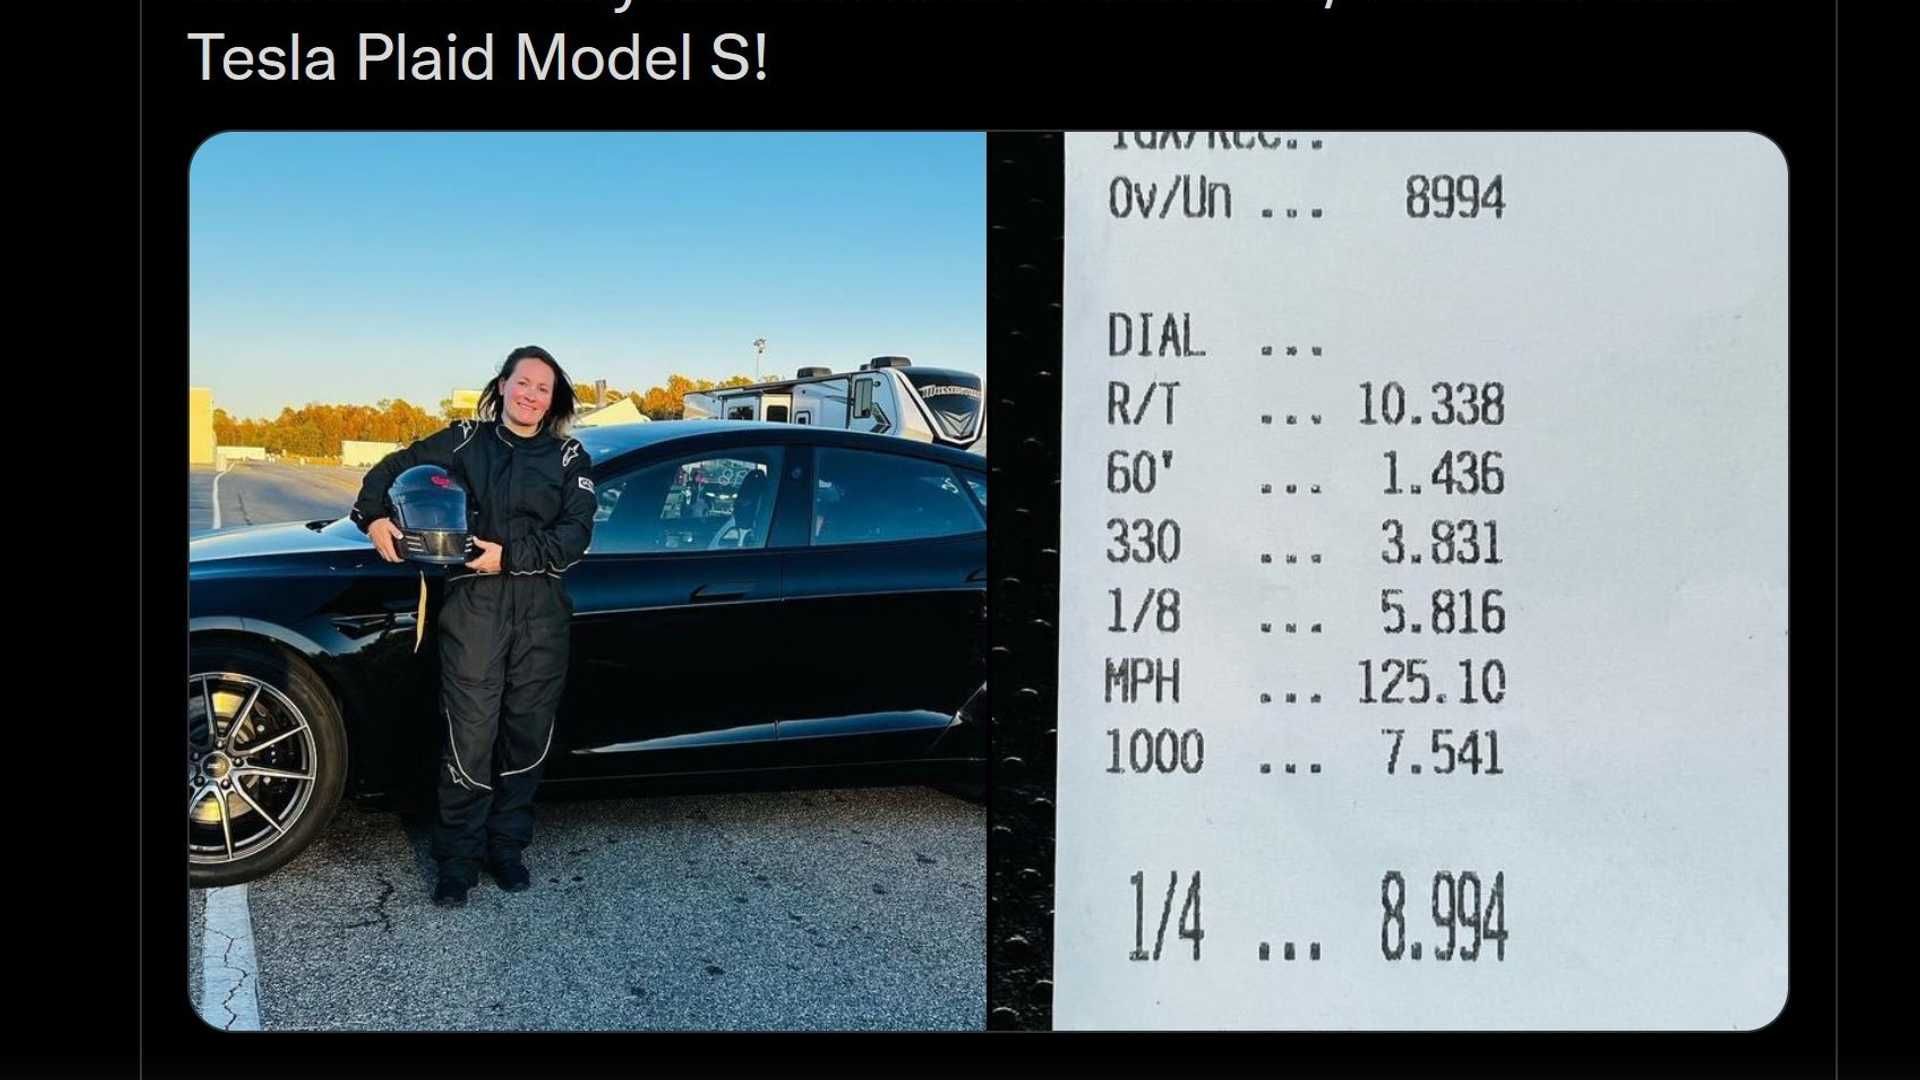 Un Tesla Model S modificado registra un tiempo inferior a 9 segundos en 14 millas